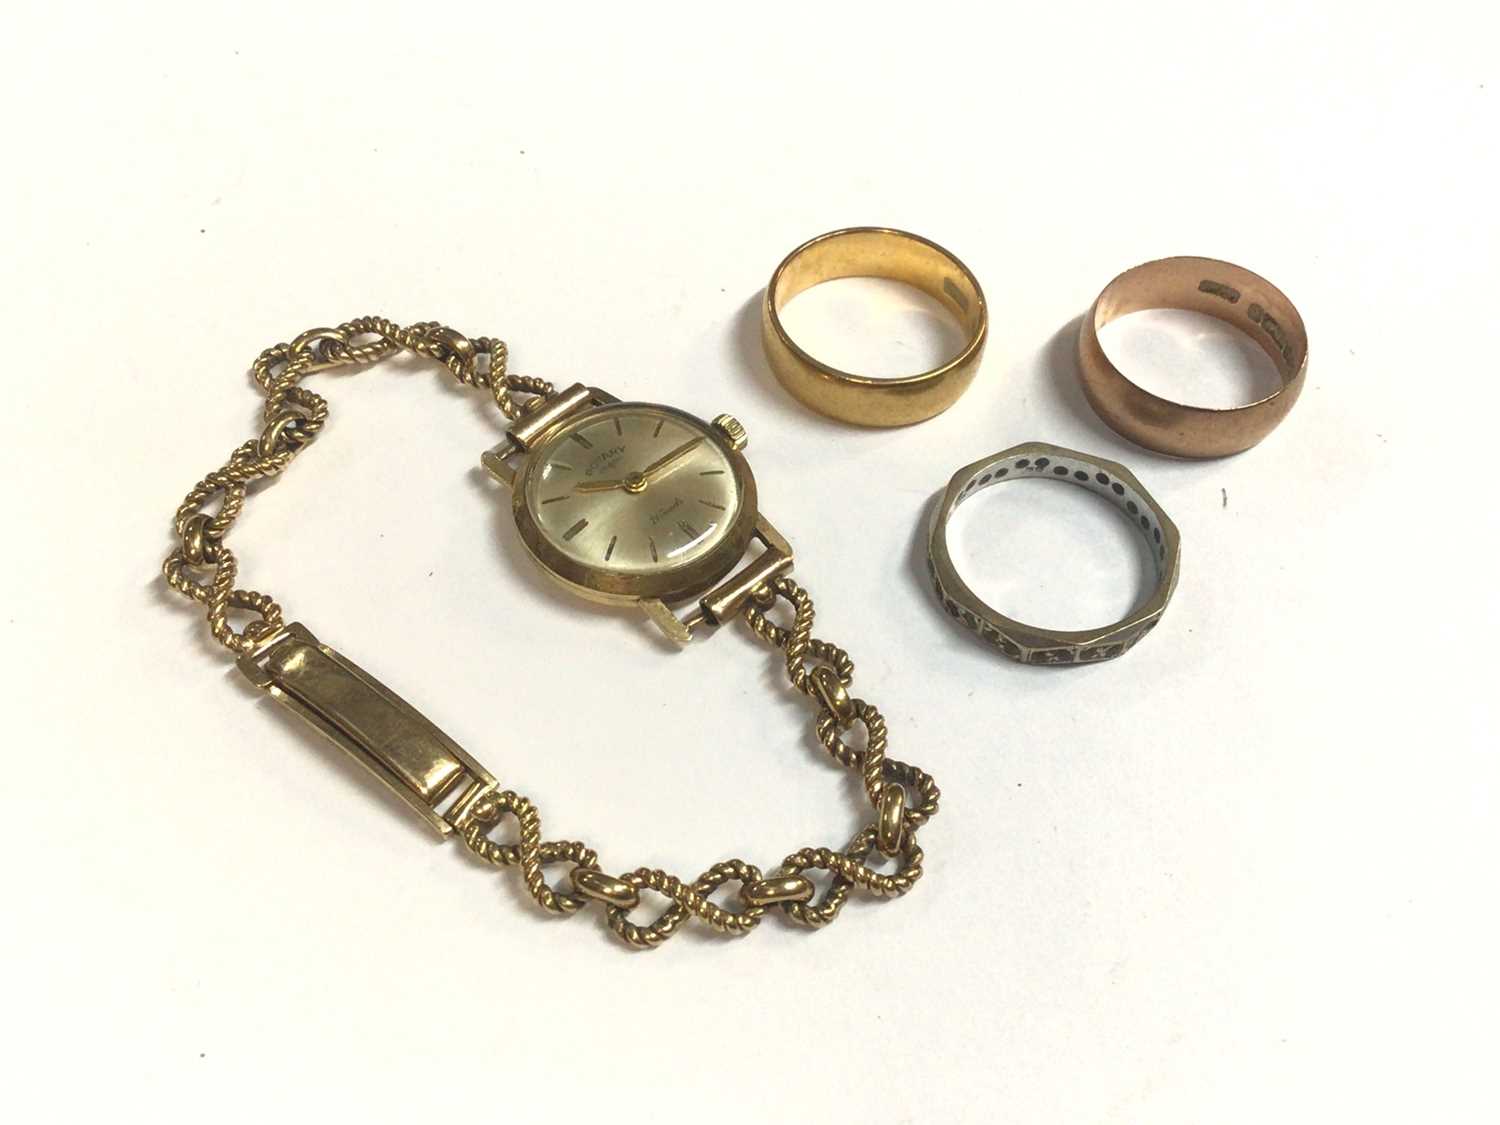 Lot 48 - 22ct gold wedding ring, 9ct rose gold wedding ring, 18ct white gold eternity ring and 9ct gold wristwatch